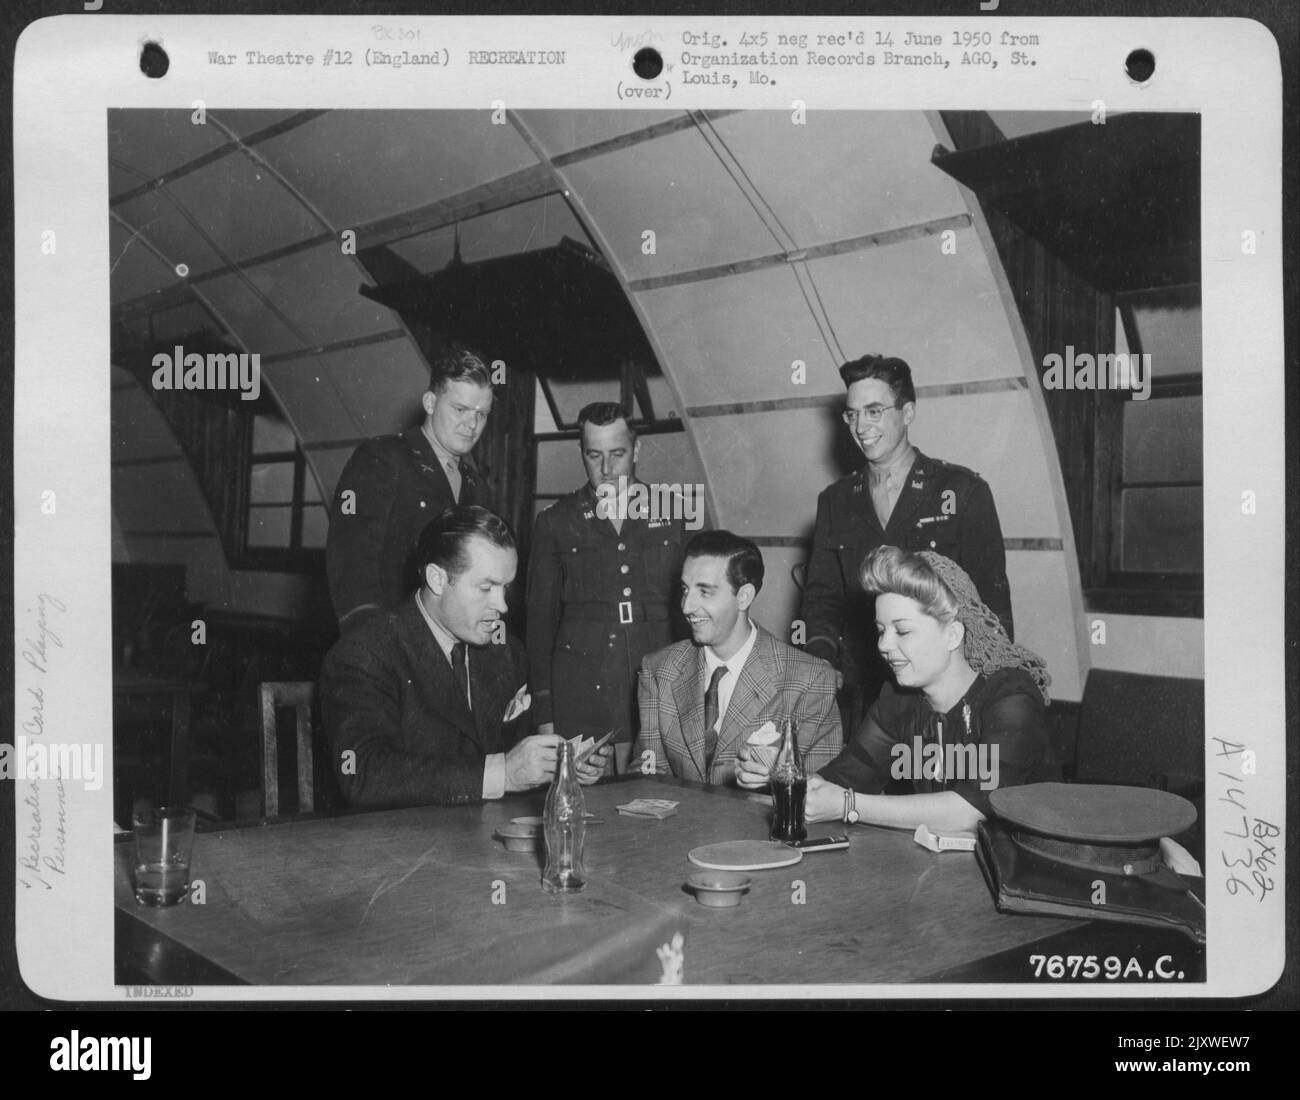 Tony Romano (Centre) et les officiers de l'Armée (contexte) regardent Bob Hope et Frances Langford pendant Un jeu de cartes à Matching, en Angleterre. Banque D'Images